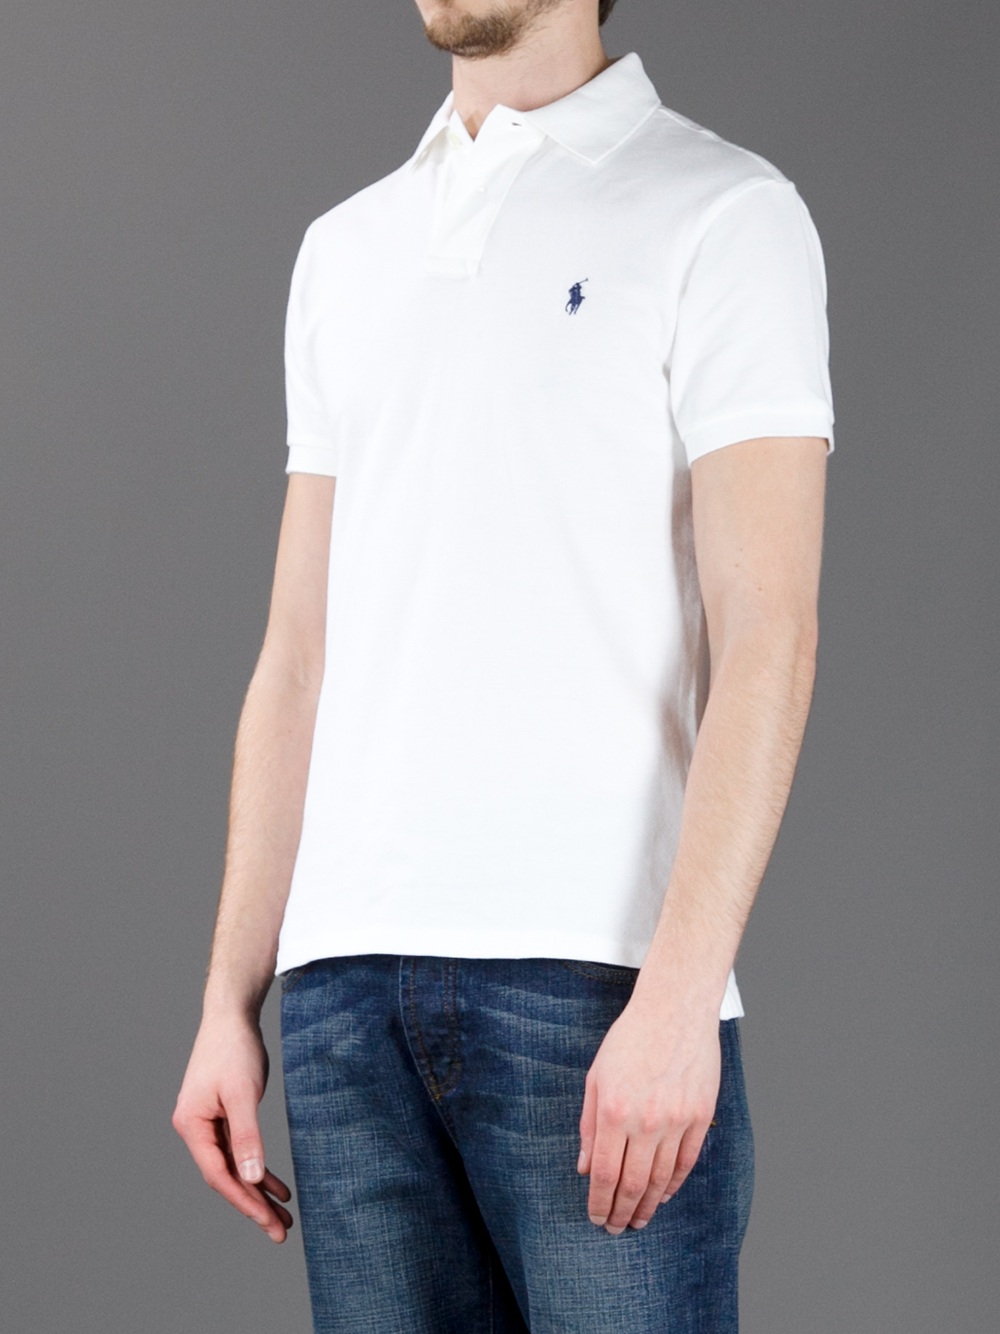 Lyst - Polo Ralph Lauren Polo Shirt in White for Men